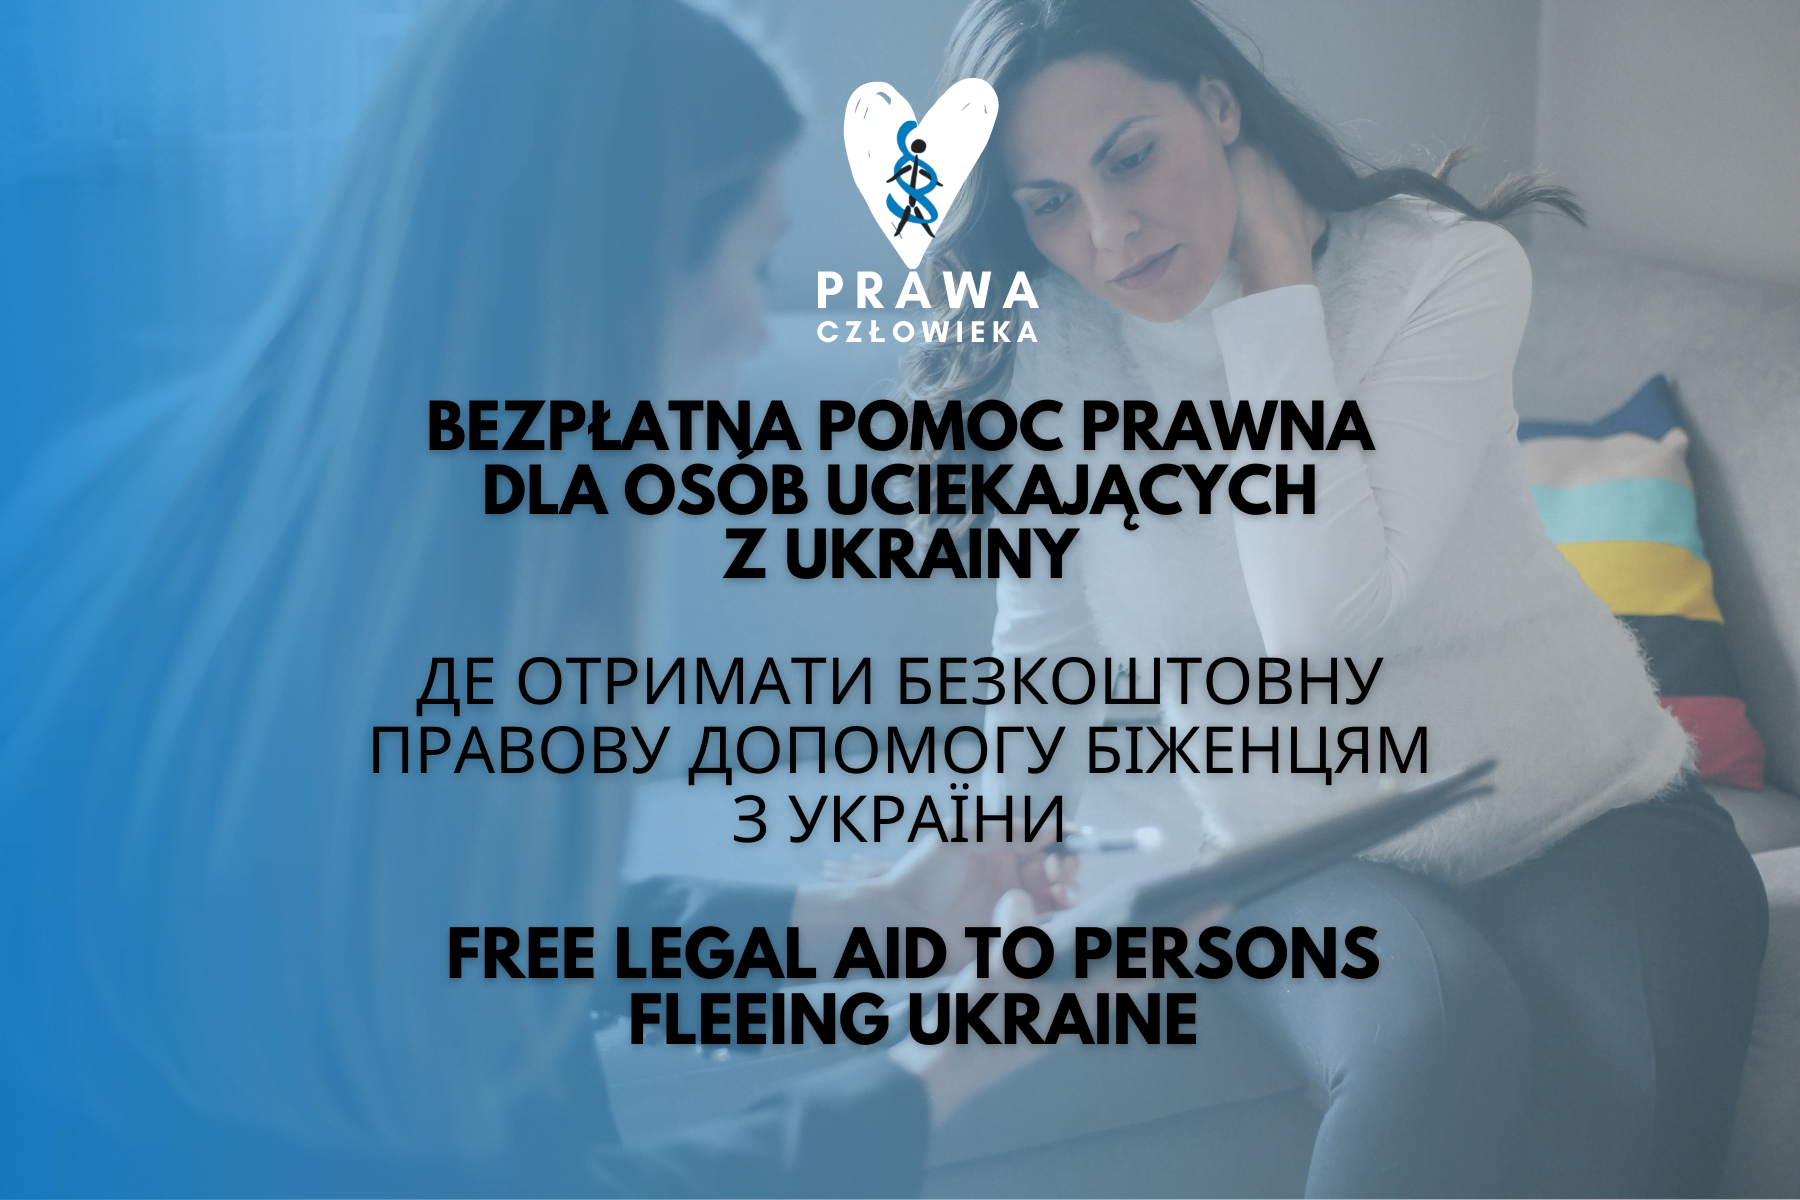 Centrum Pomocy Prawnej Im Haliny Nieć Pomoc Prawna Dla Uchodźców Z Ukrainy 8533